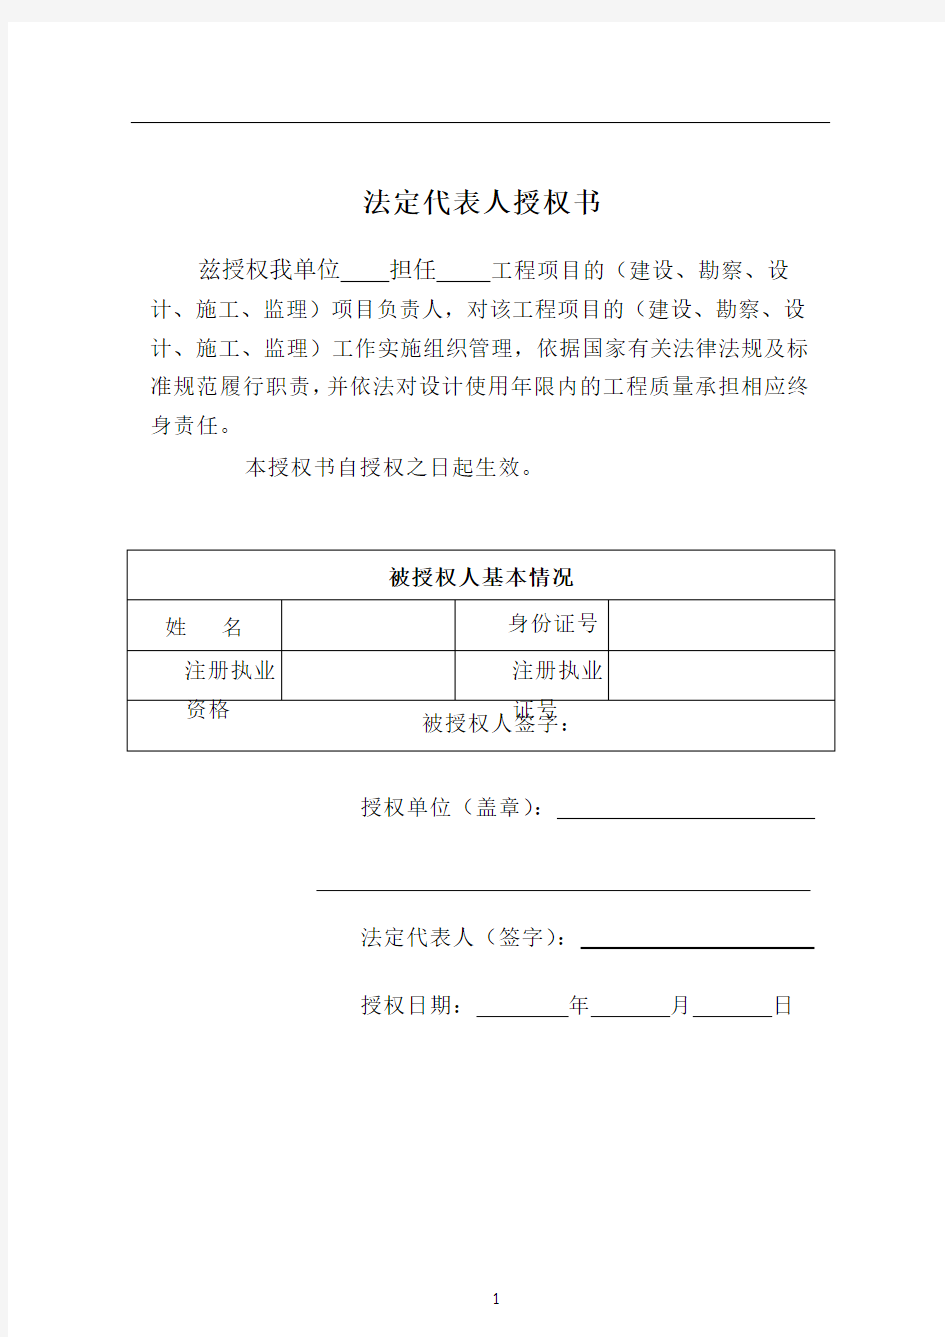 上海市建设工程责任终身制承诺书